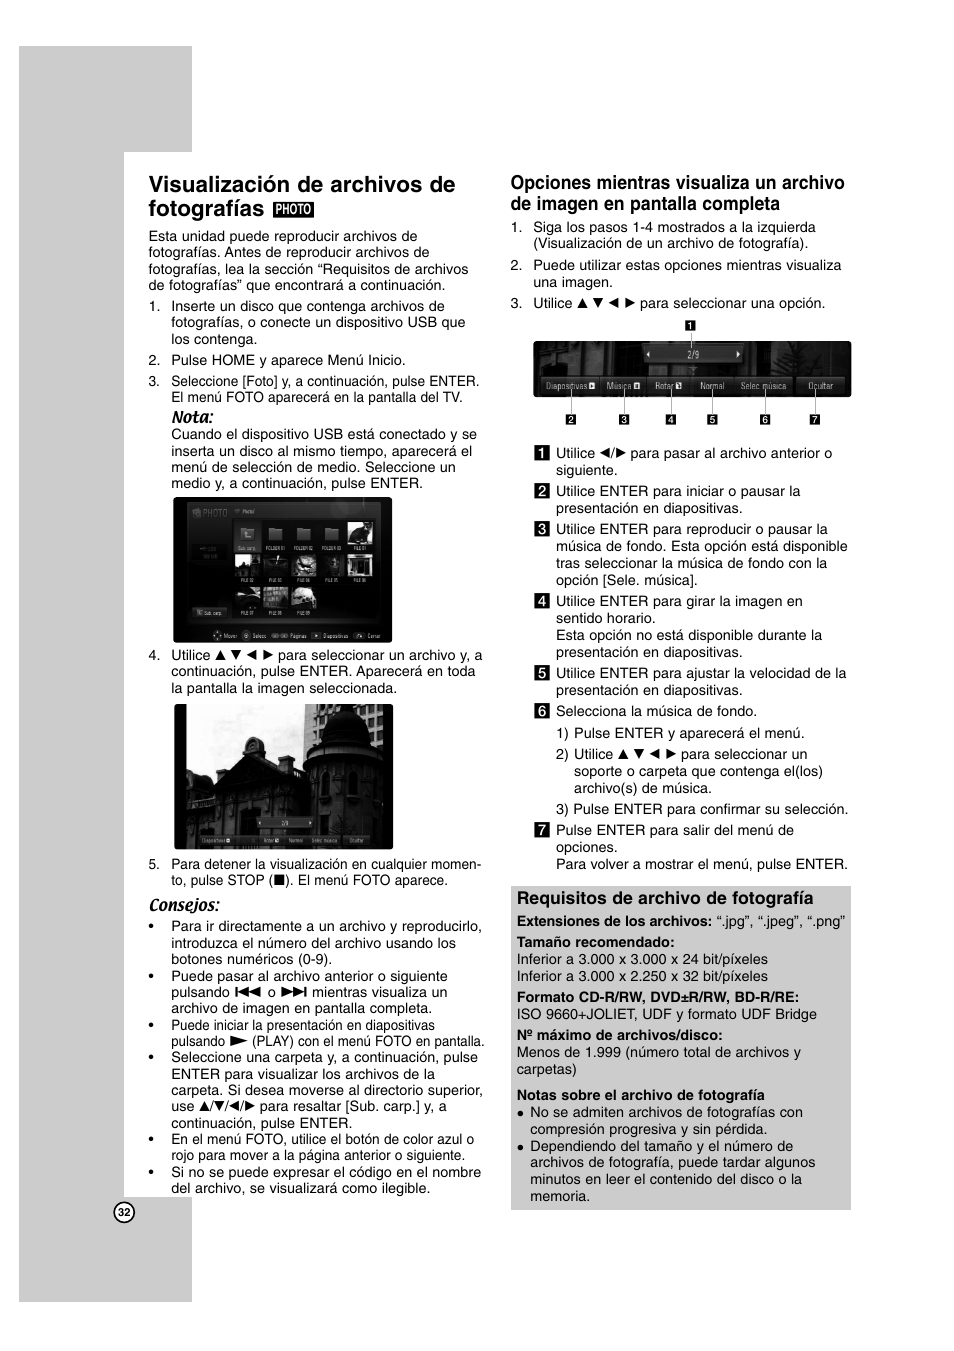 Visualización de archivos de fotografías | LG BD300 Manual del usuario | Página 32 / 40